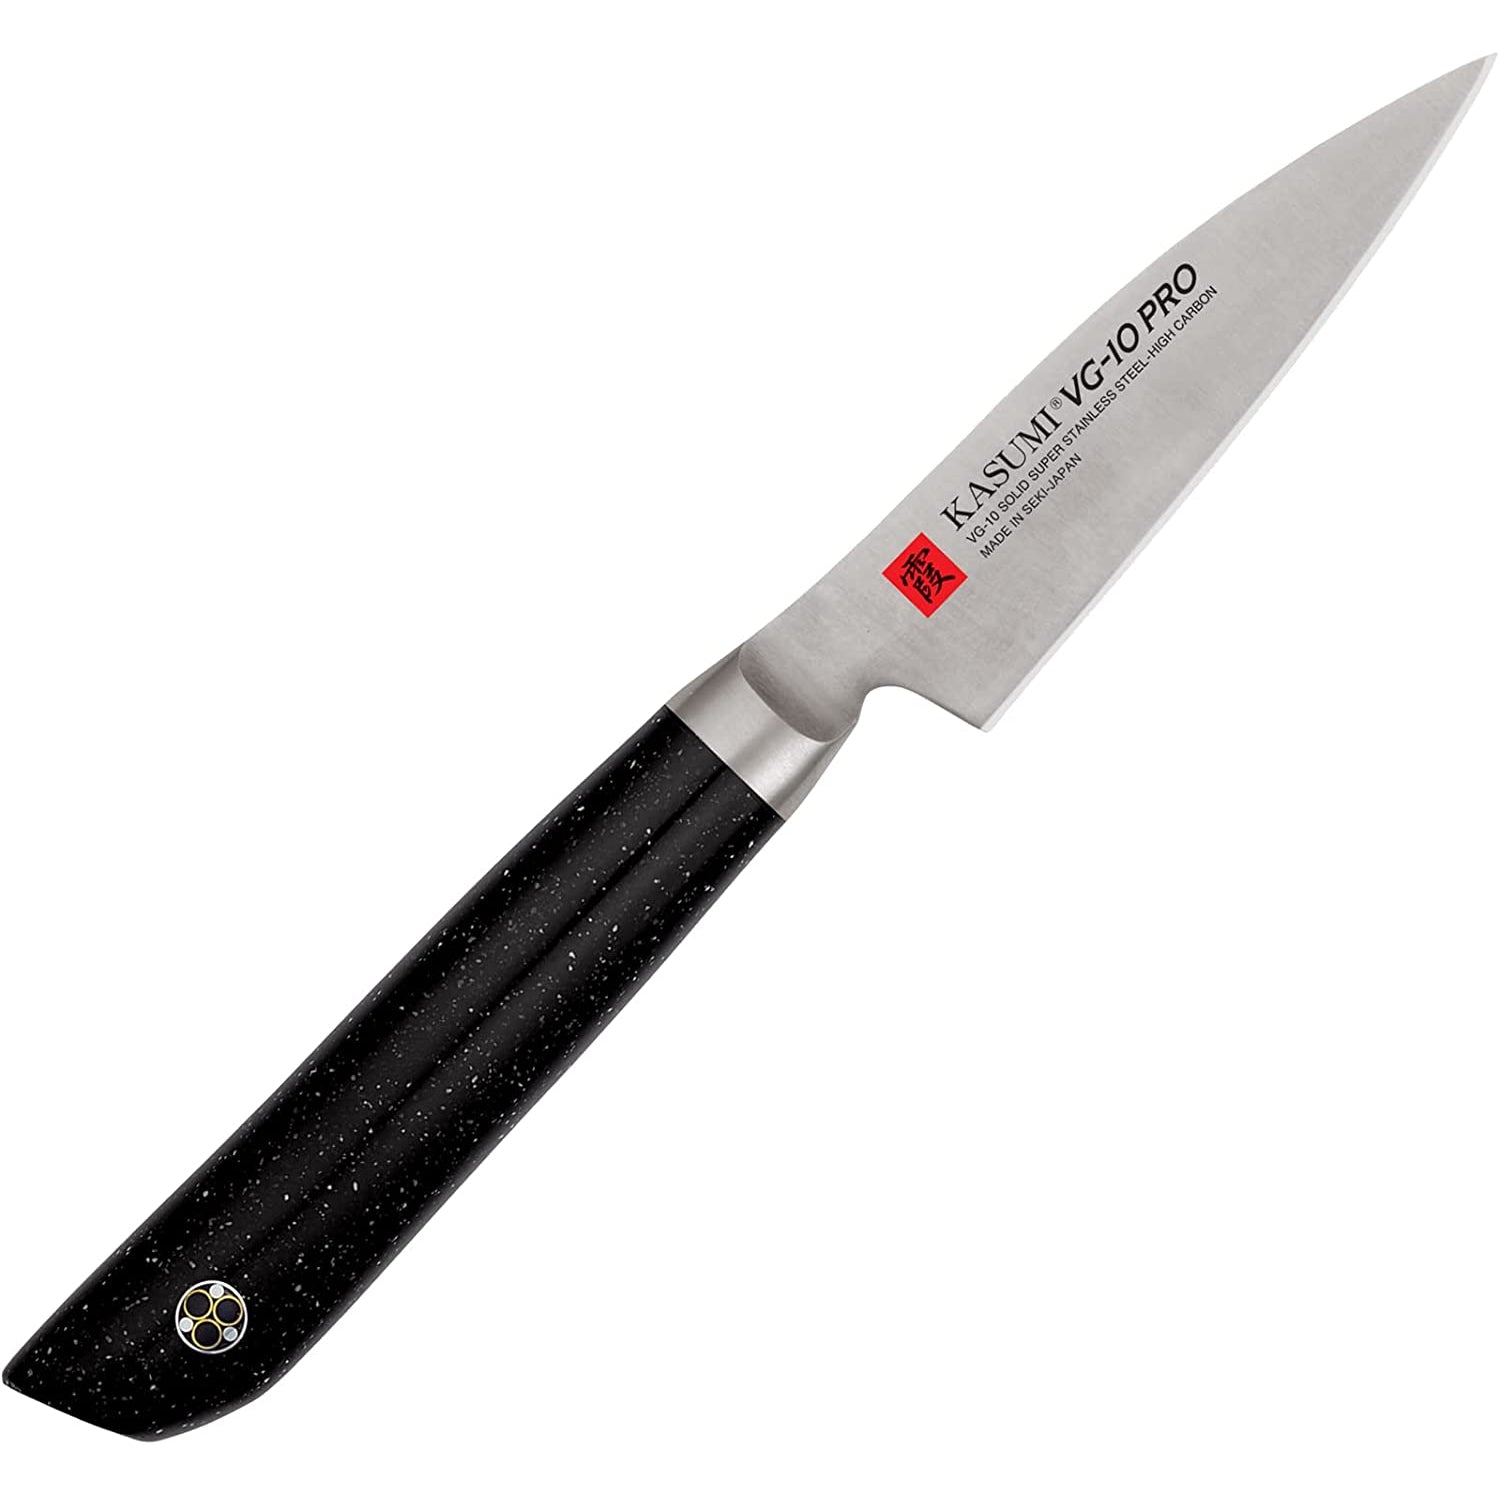 Sumikama Kasumi VG10 Steel Fruit Knife (Japanese Petty Knife) 80mm 52008